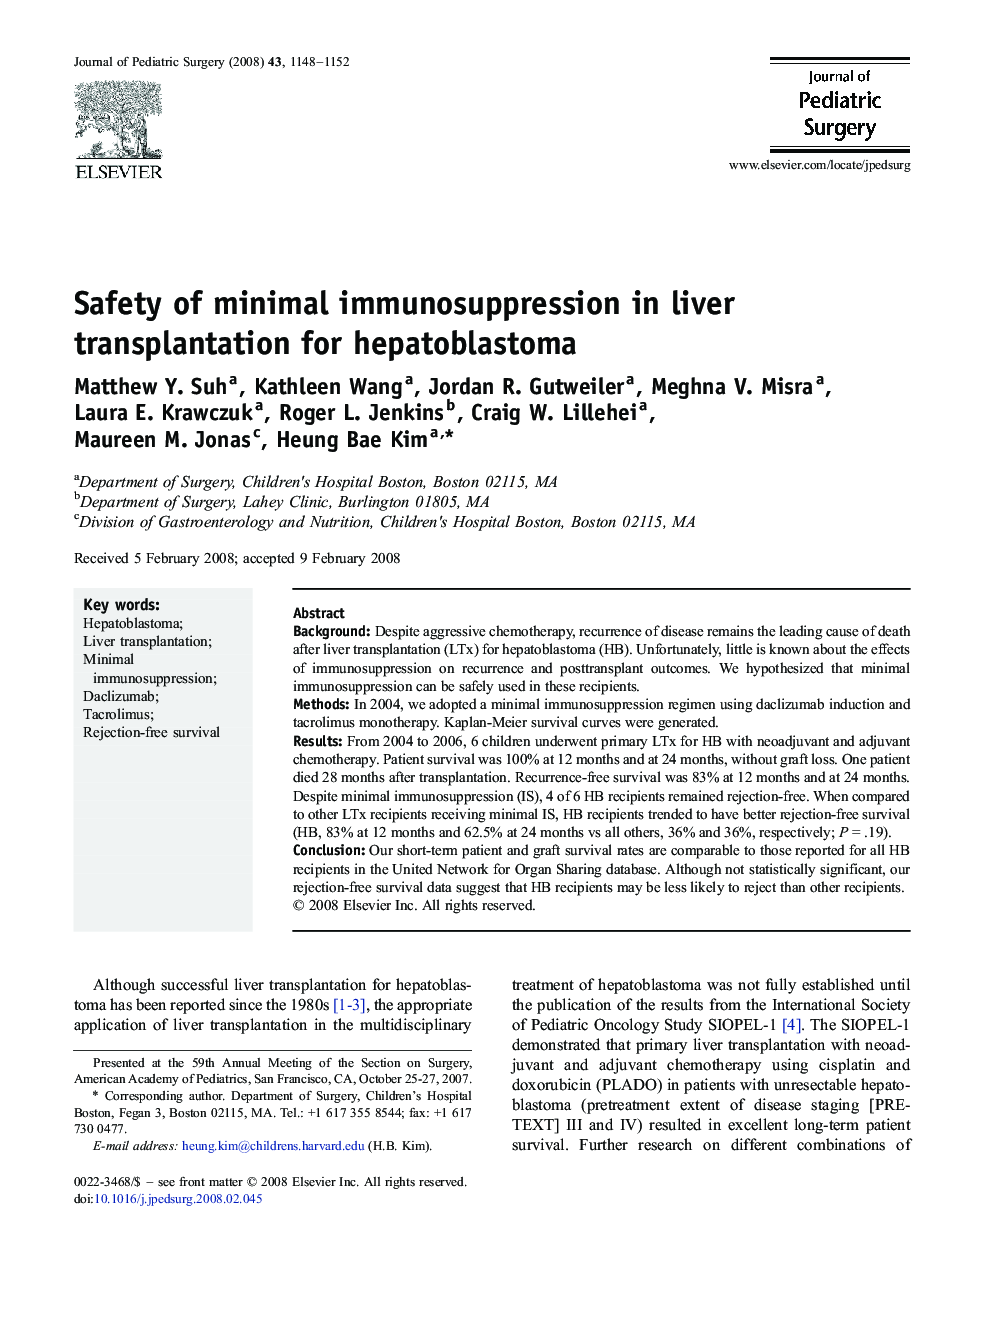 Safety of minimal immunosuppression in liver transplantation for hepatoblastoma